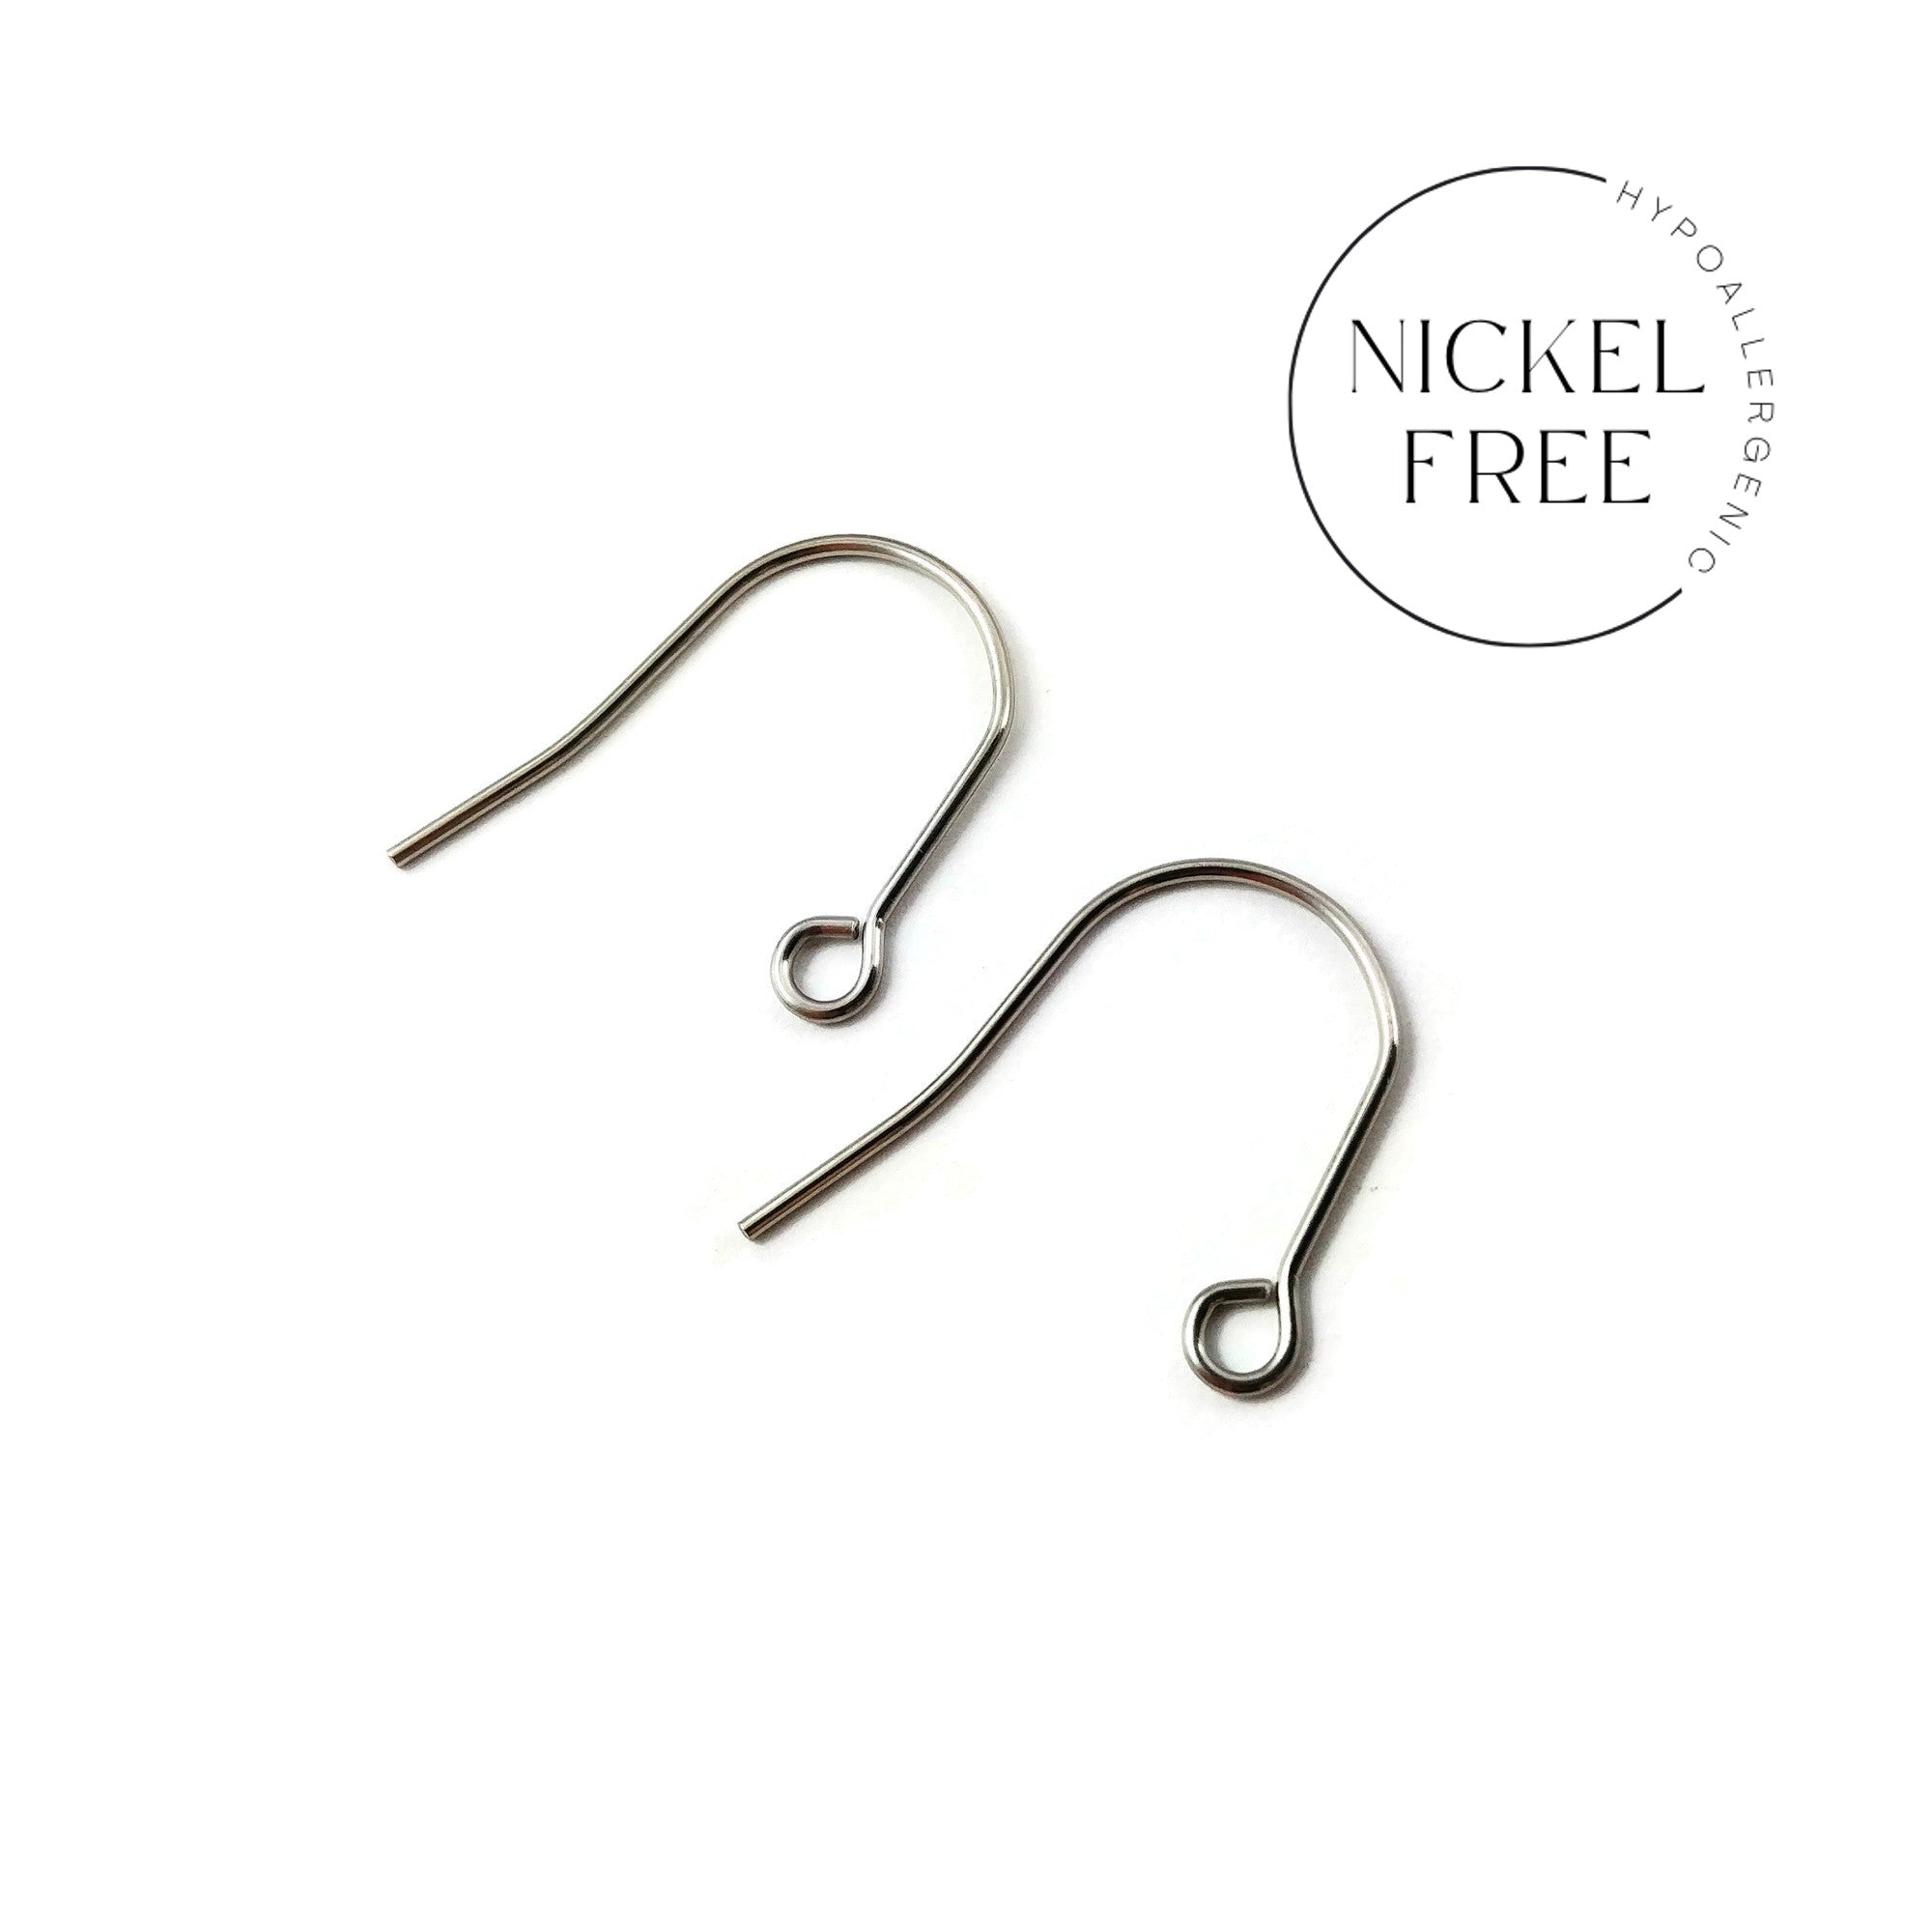 Hypoallergenic Surgical Stainless Steel Stud Earrings Hooks, 8 Mm Blank Earring  Hooks, DIY Earrings, DIY Jewelry 